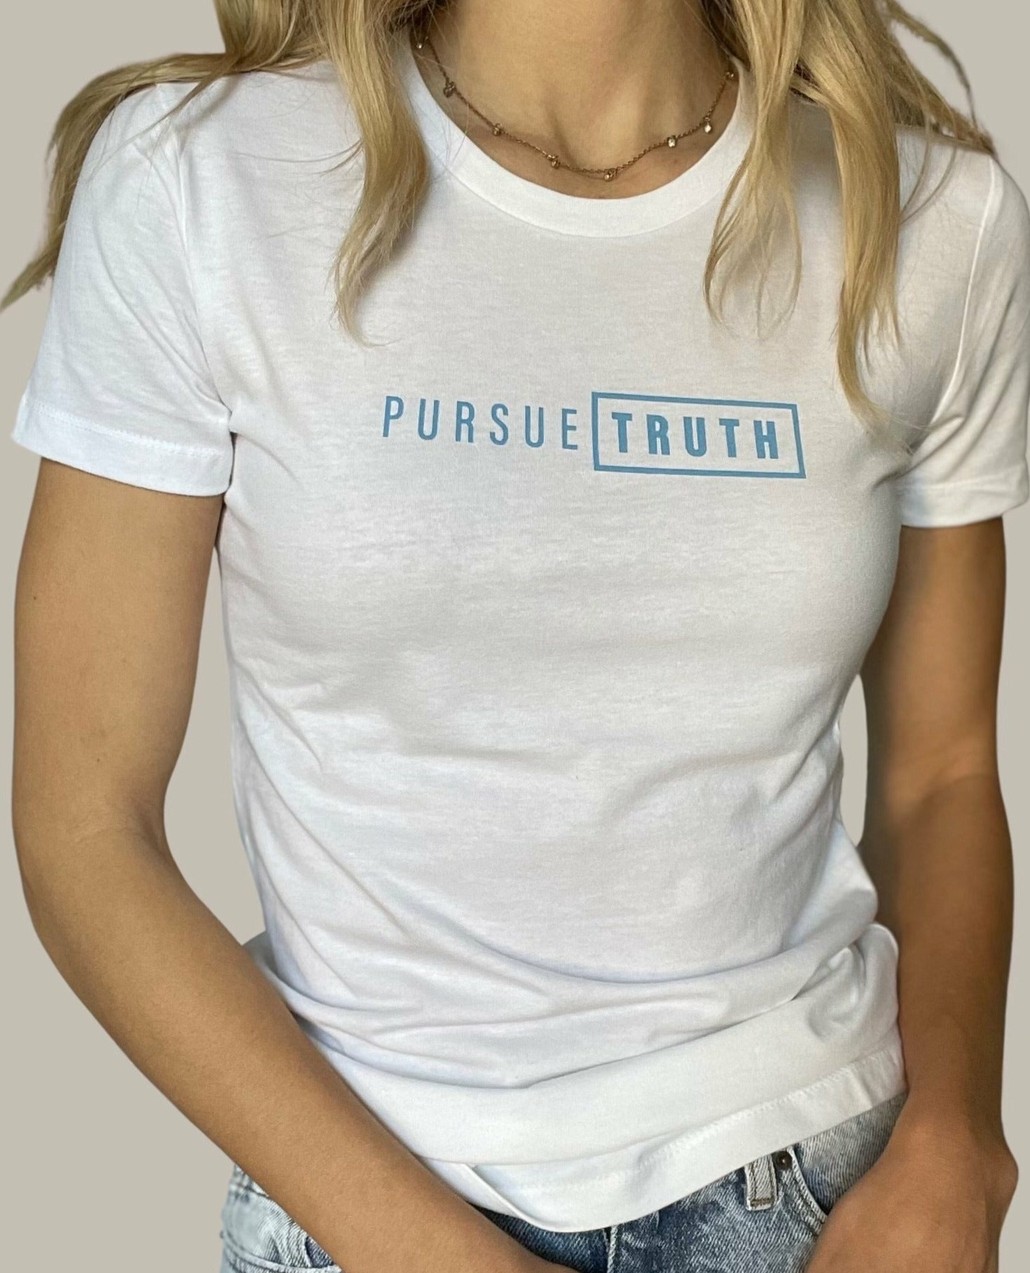 Pursue Truth Advocacy Womens T-Shirt_Involvd Social Advocacy Clothing Brand